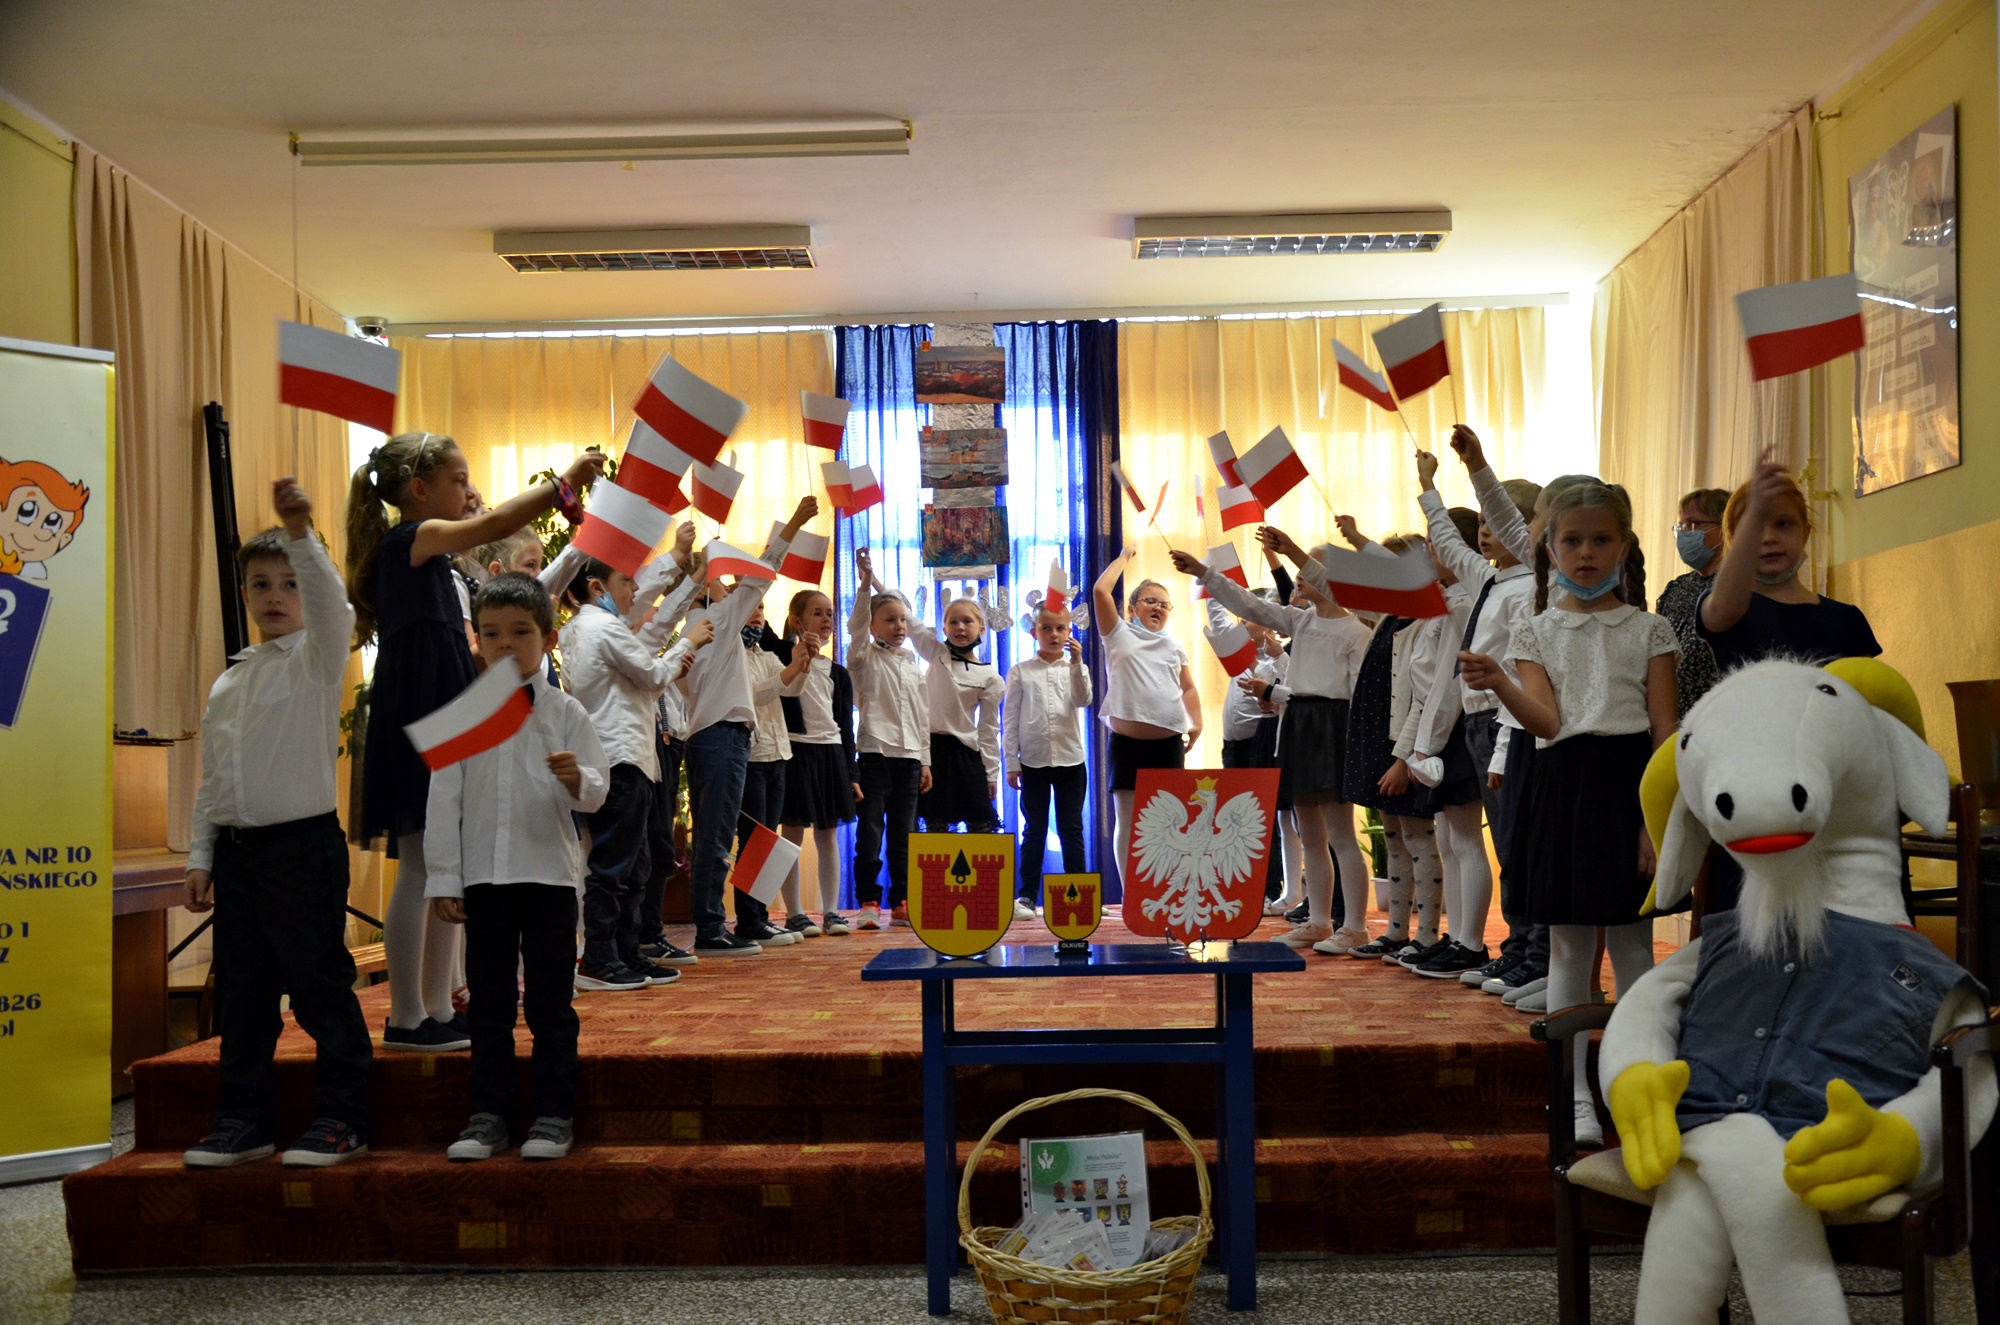 Grupa uczniów stoi na scenie z flagami